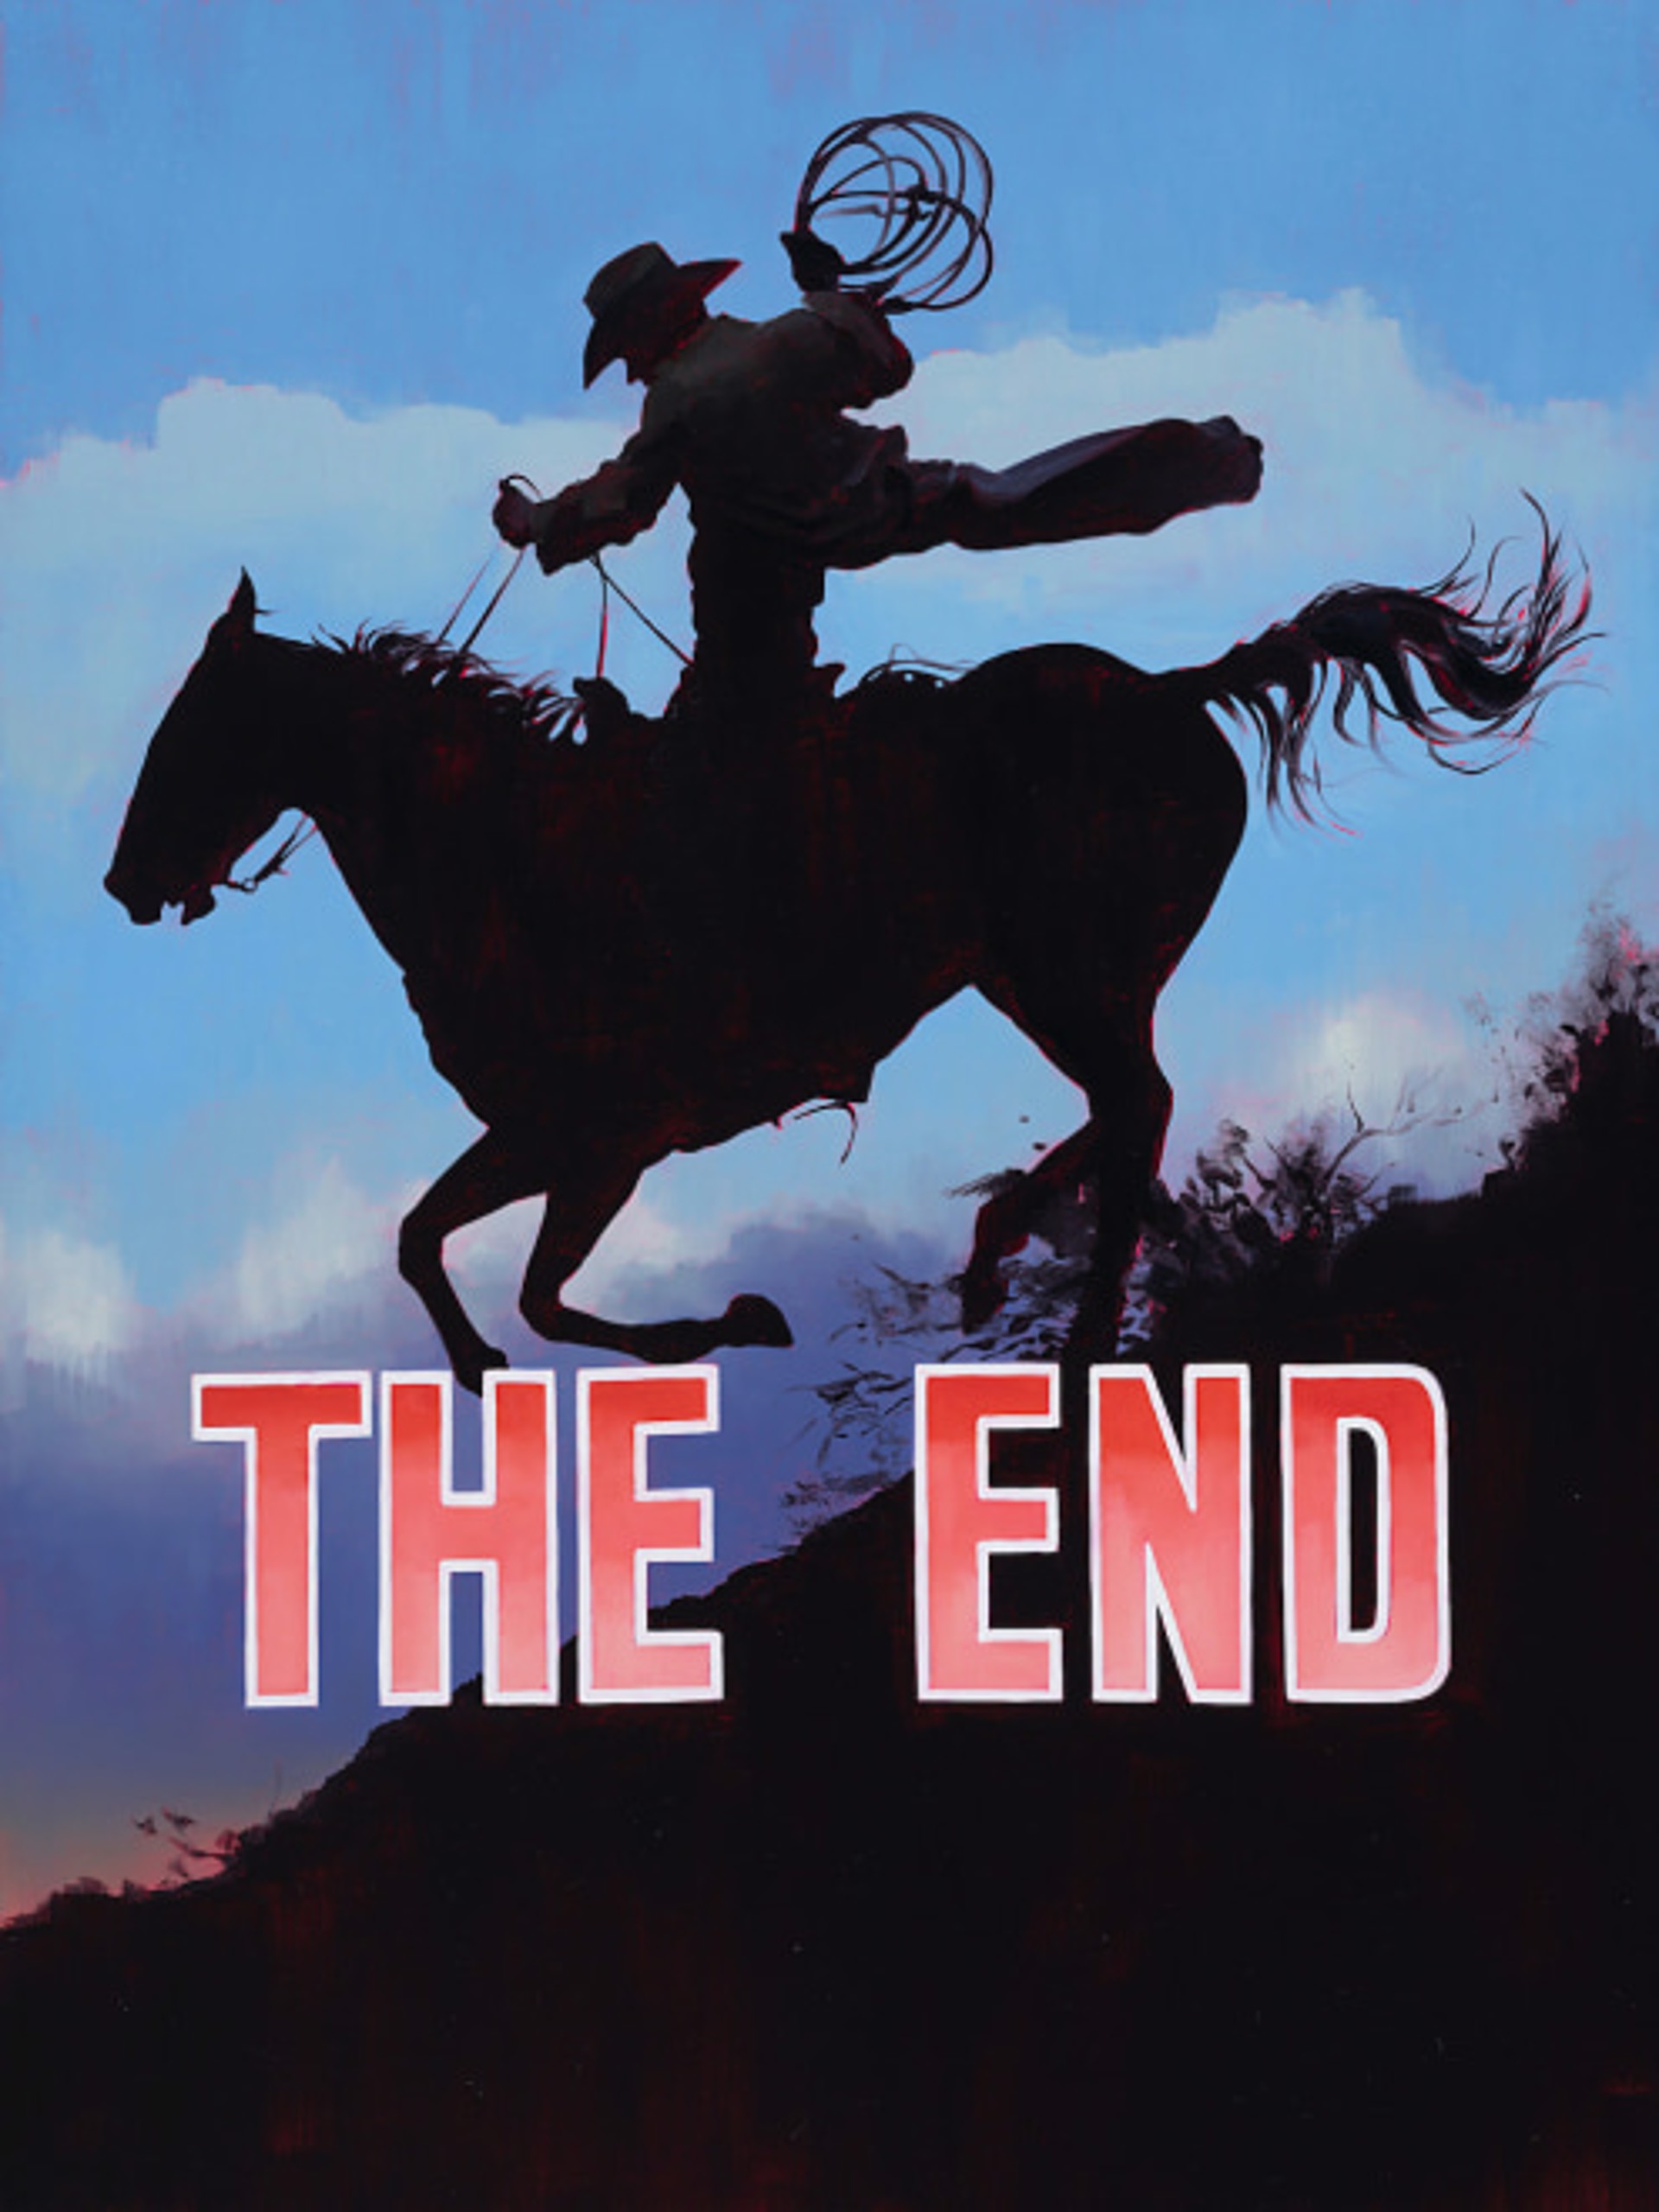 Folklore - The End by Geoffrey Gersten